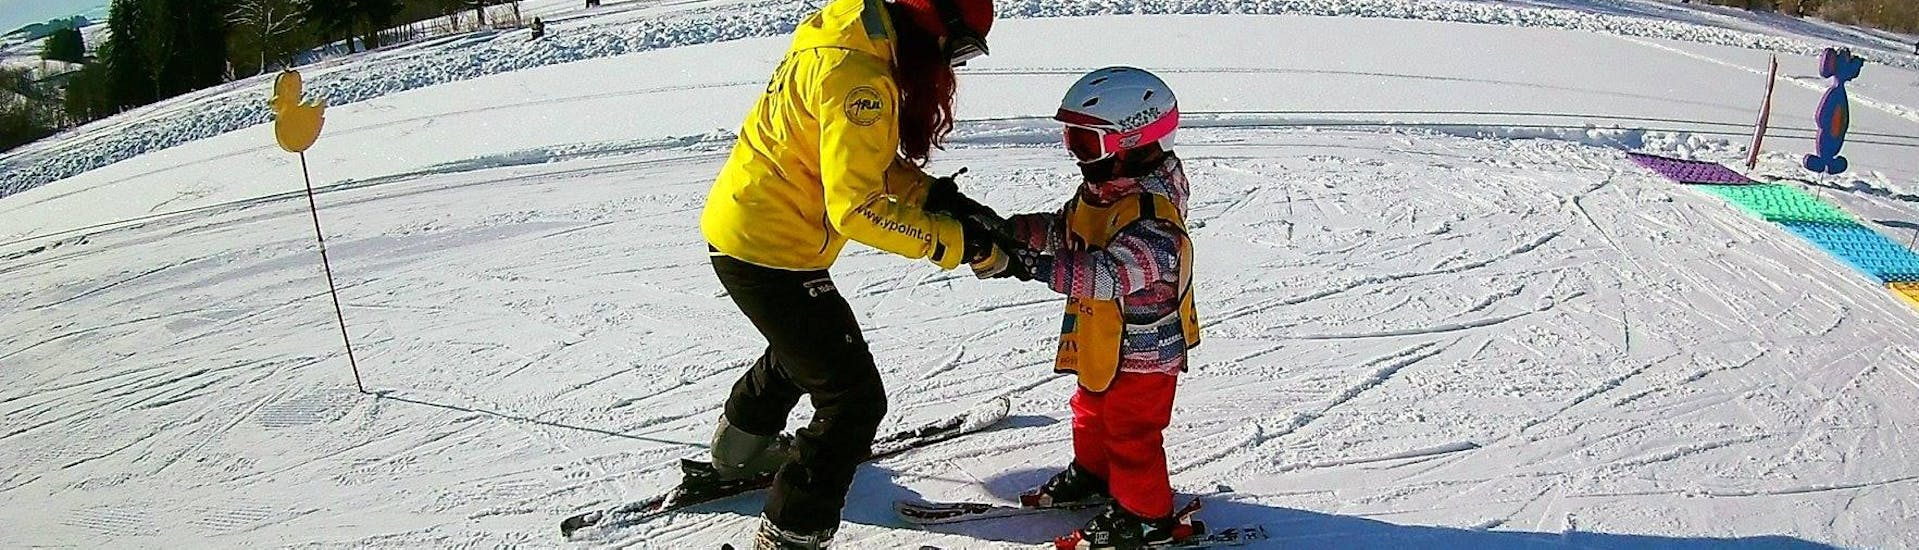 Ein Skilehrer der Skischule Yellow Point Špindlerův Mlýn bringt einem Mädchen im Rahmen des privaten Skikurses für Kinder und Jugendliche jeden Alters das Fahren mit dem Schneepflug bei.